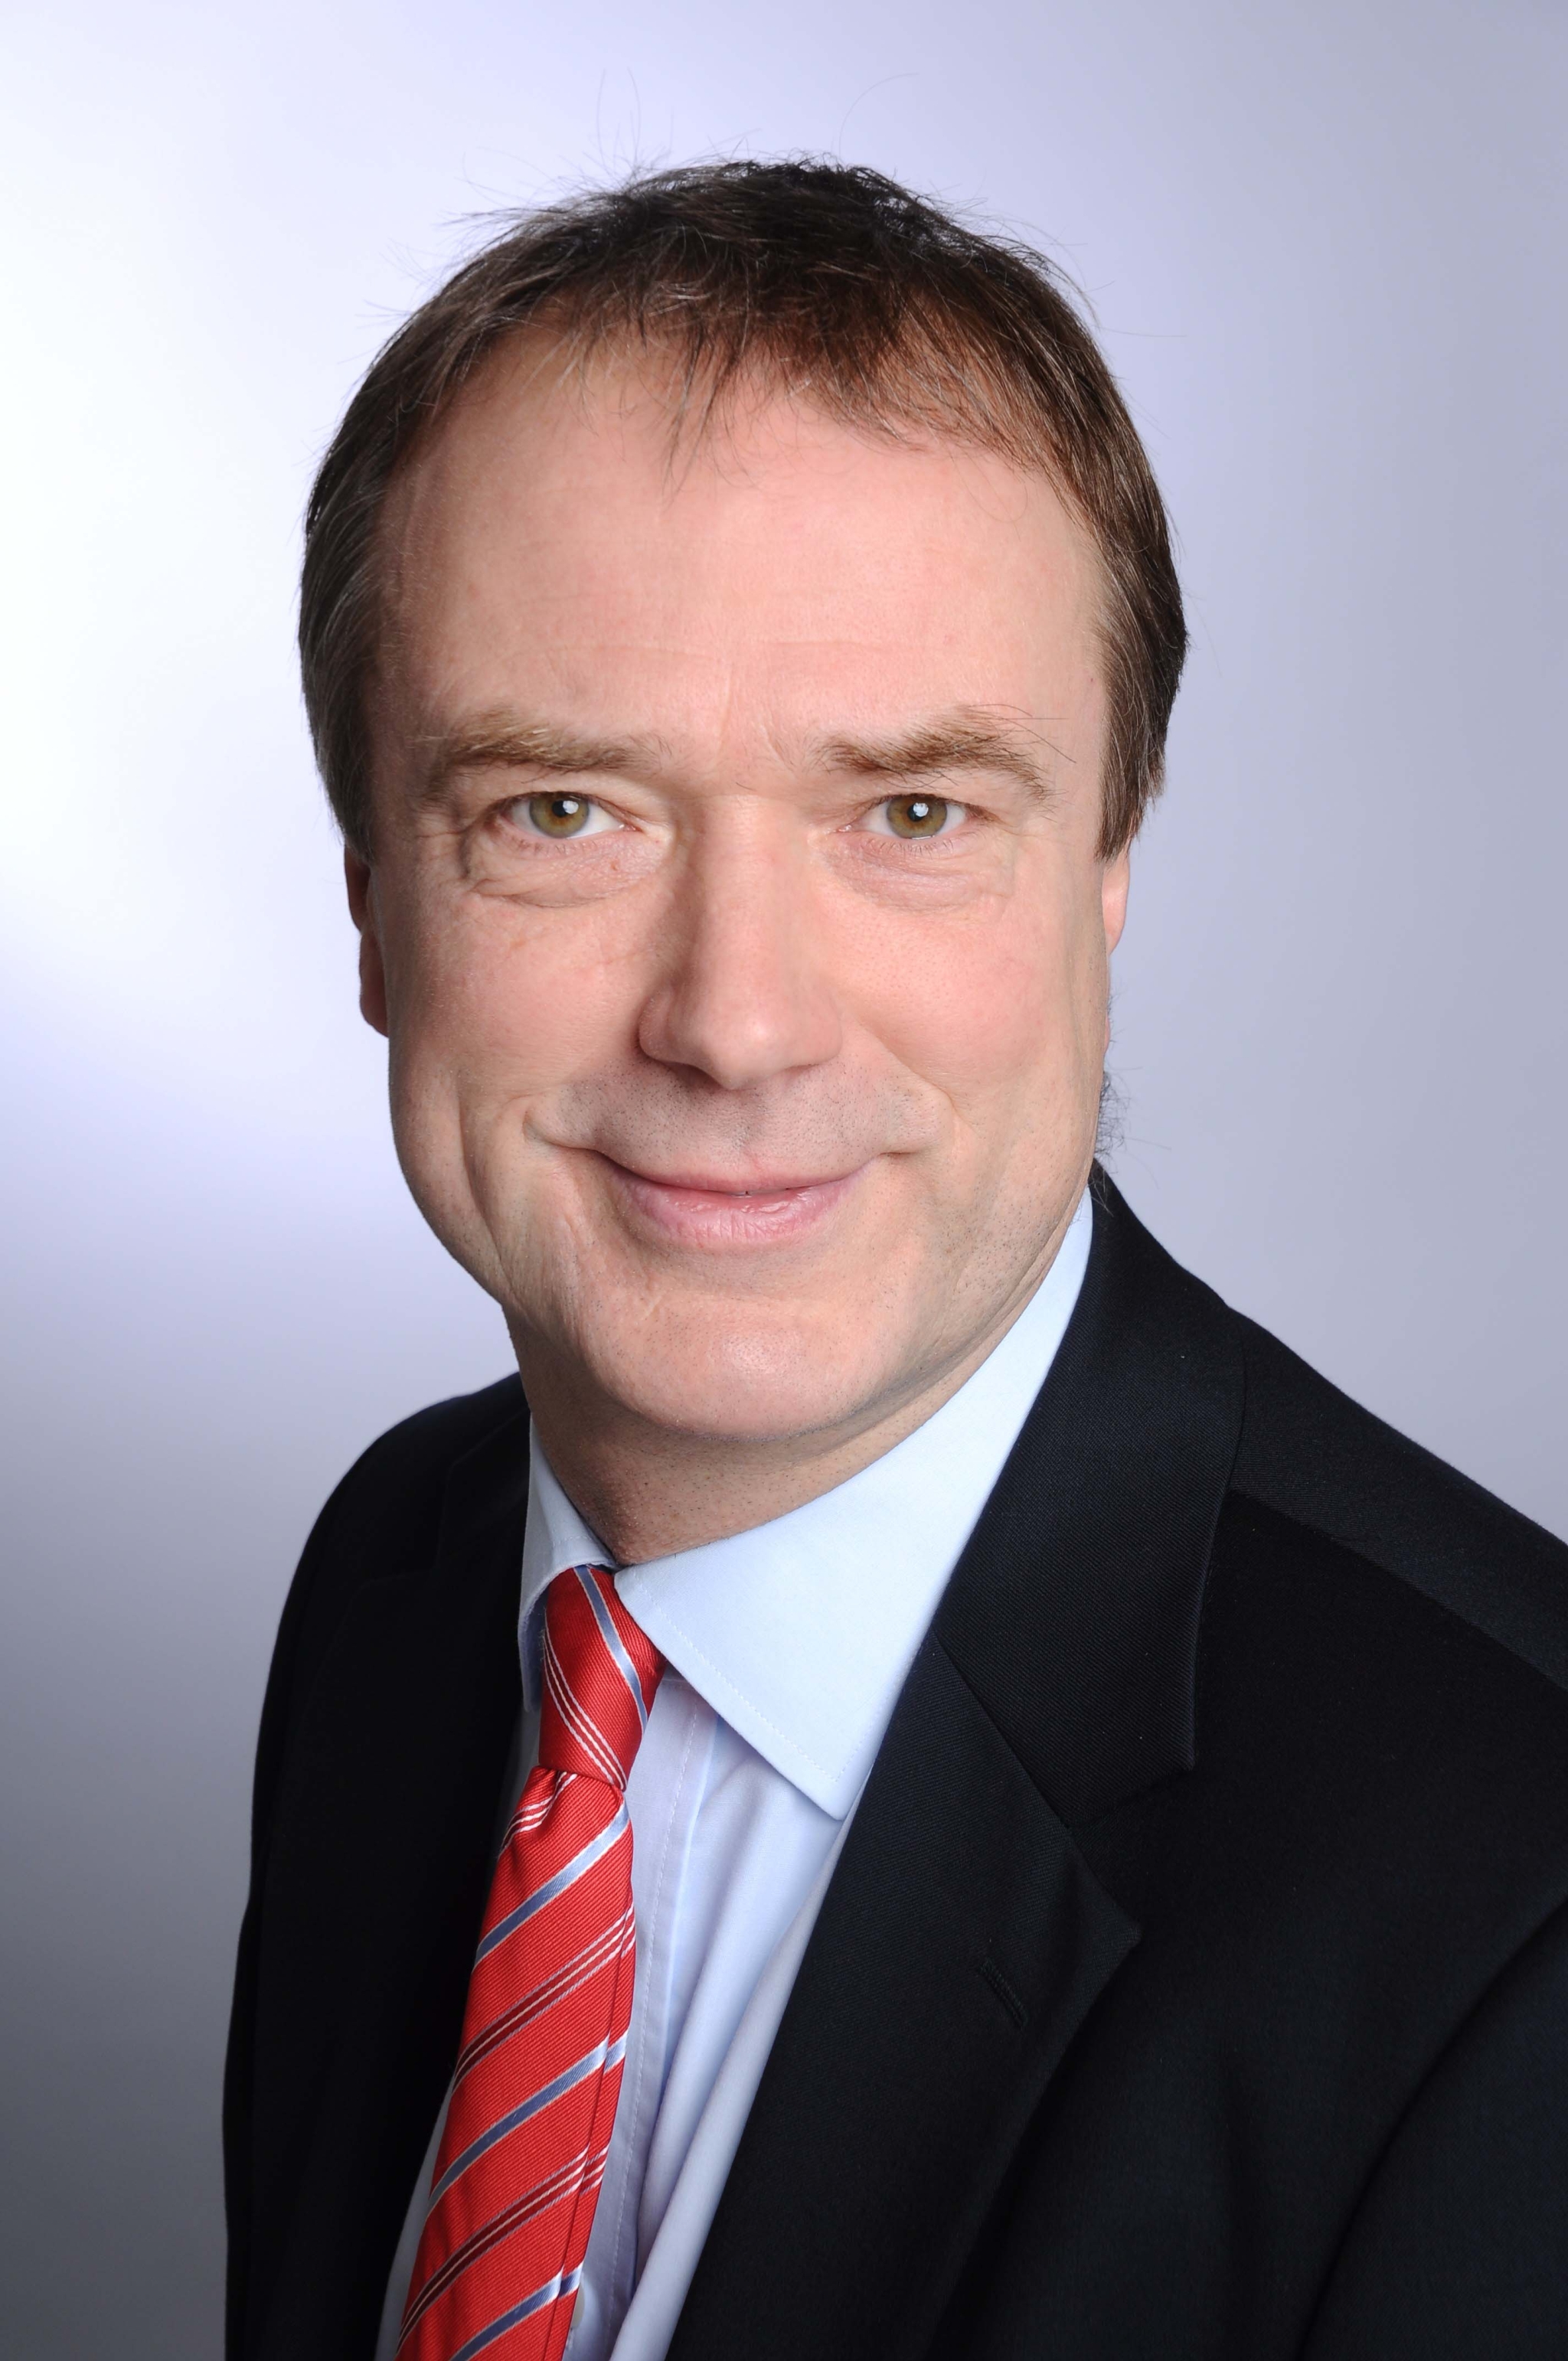 Porträtbild des Geschäftsführers der greenovation Biotech GmbH: Dr. Thomas Frischmuth